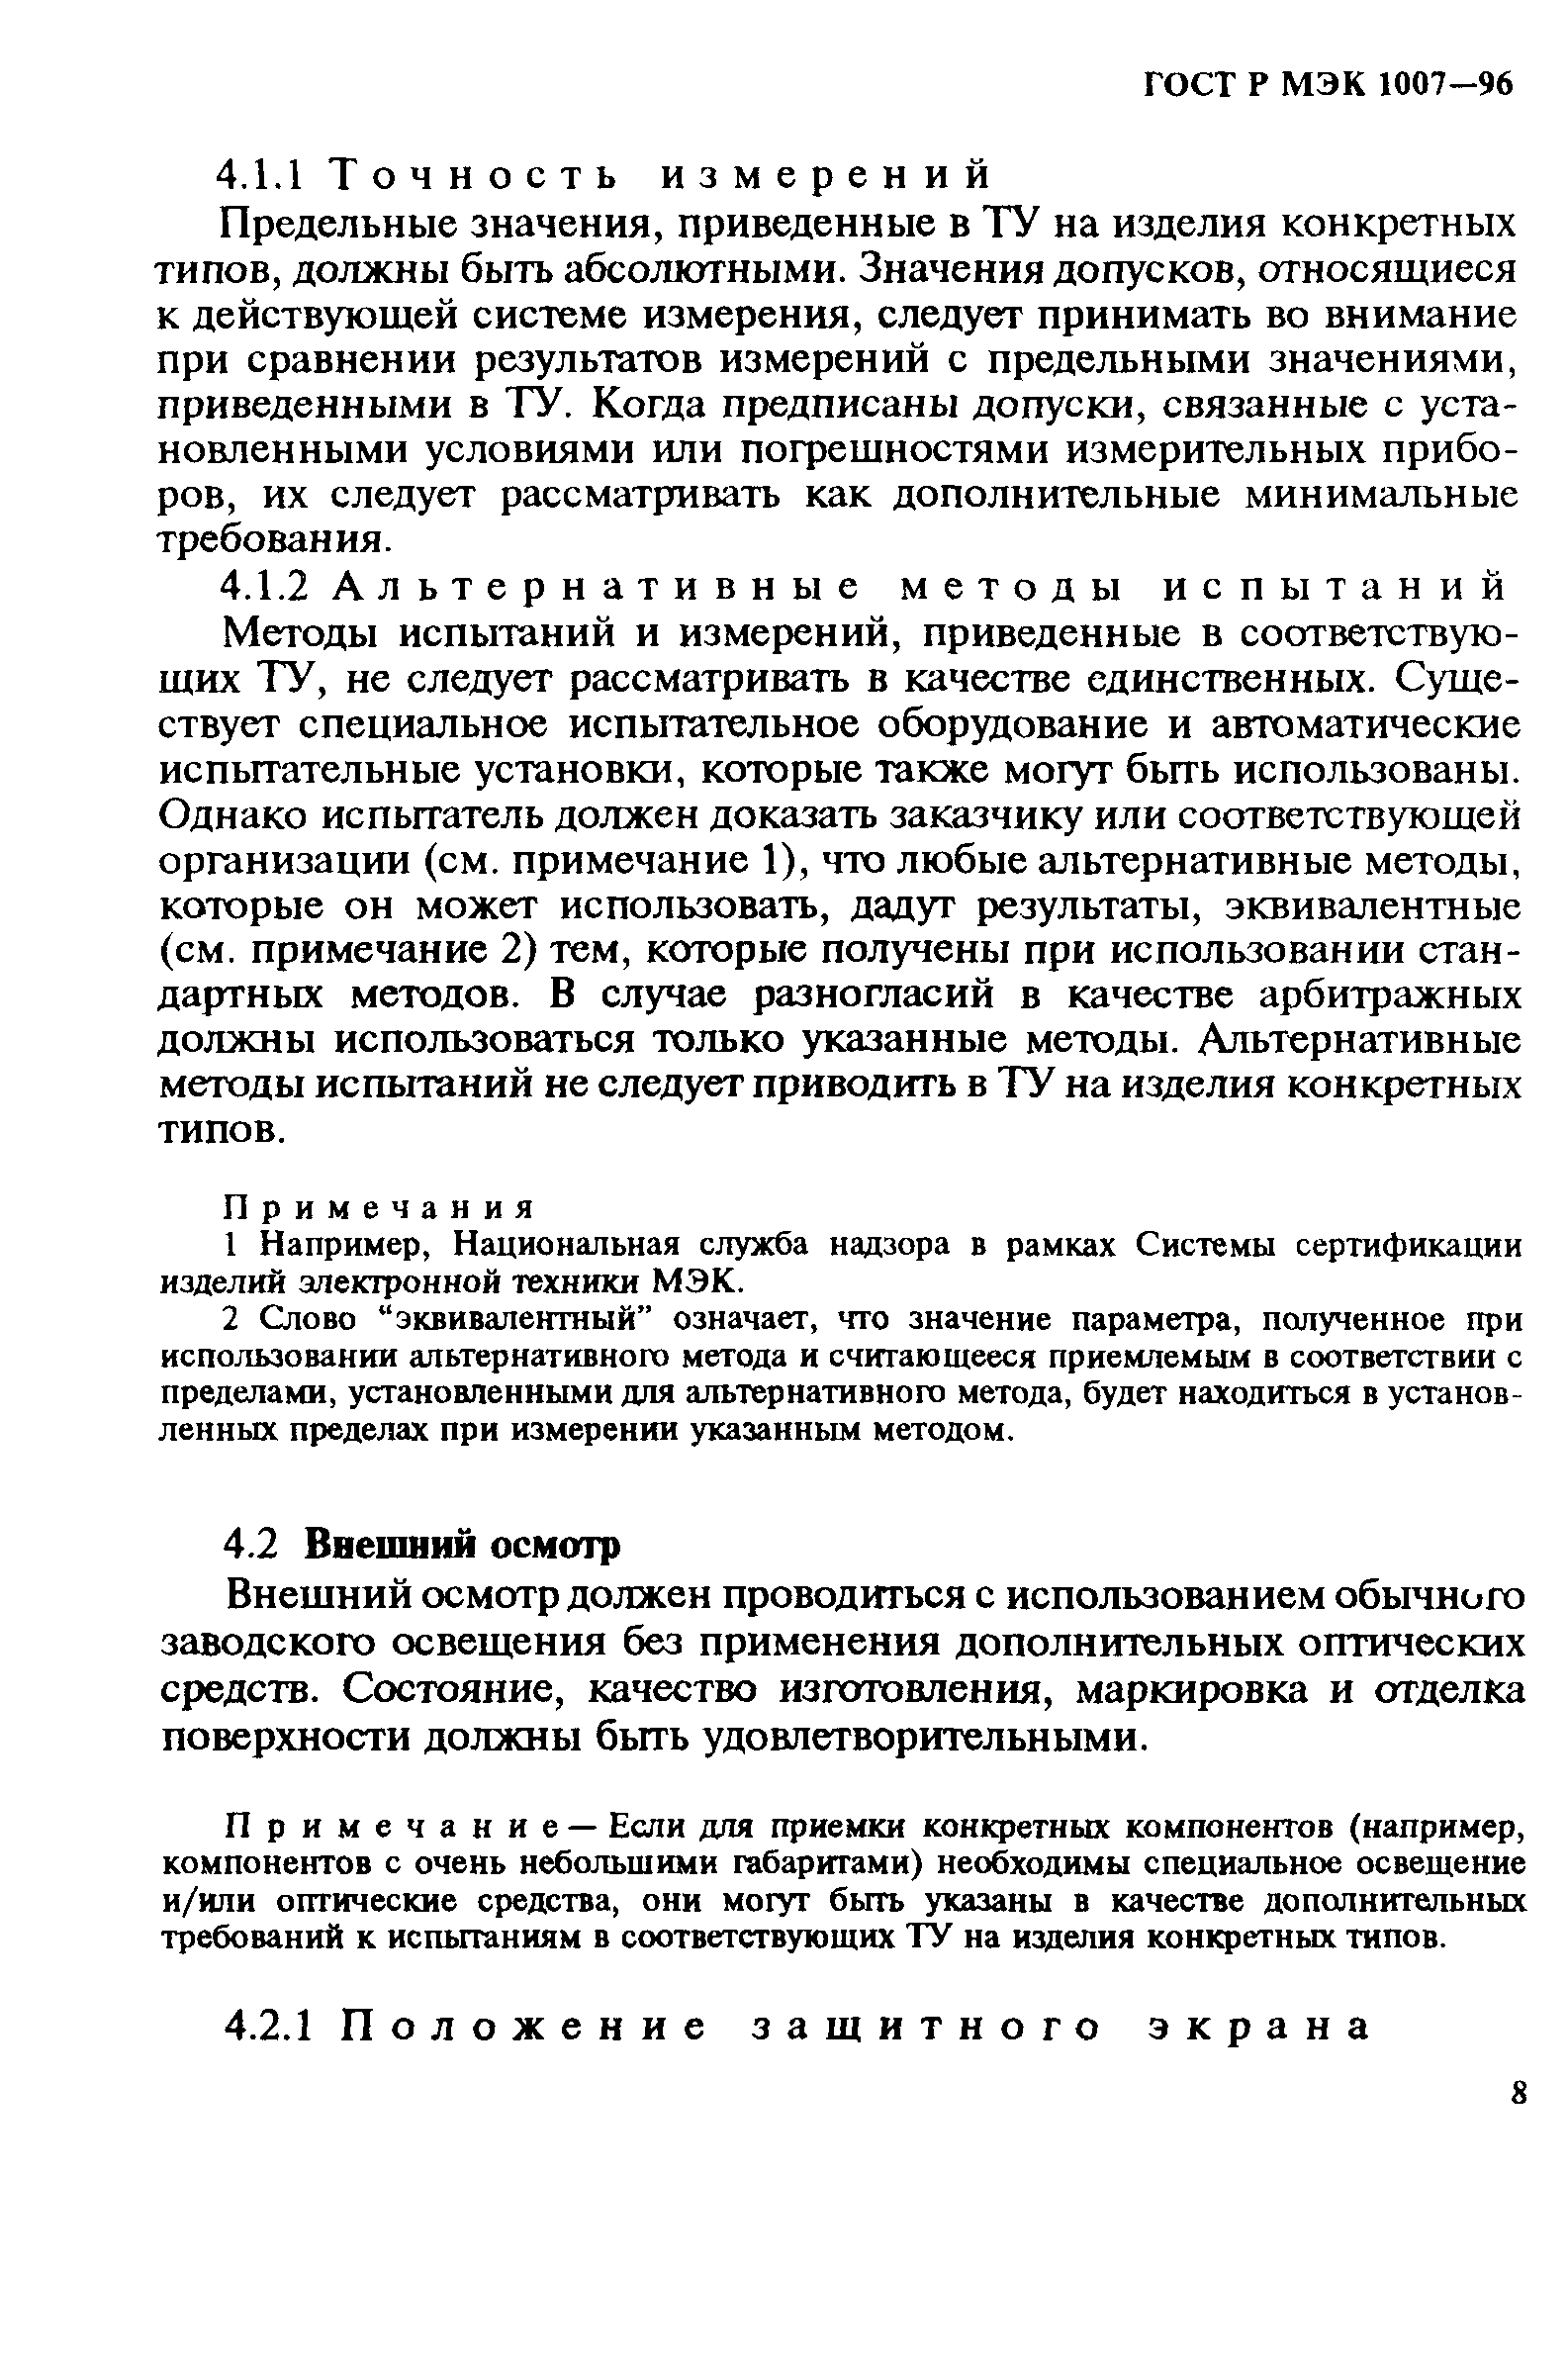 ГОСТ Р МЭК 1007-96